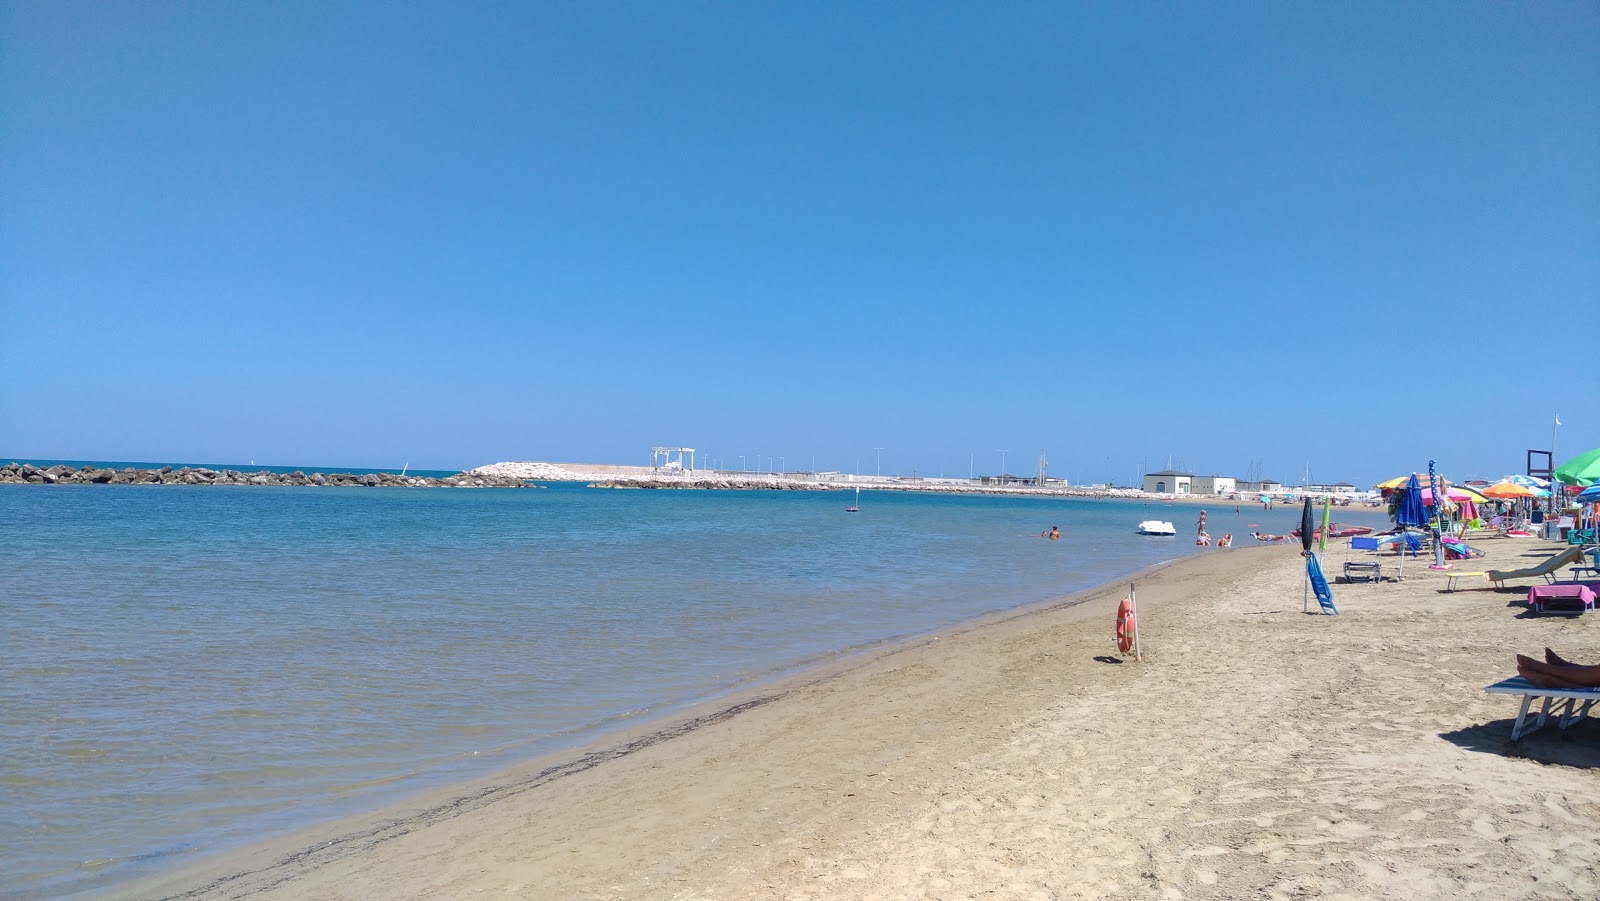 Foto de Marina di Montenero II com areia marrom fina superfície